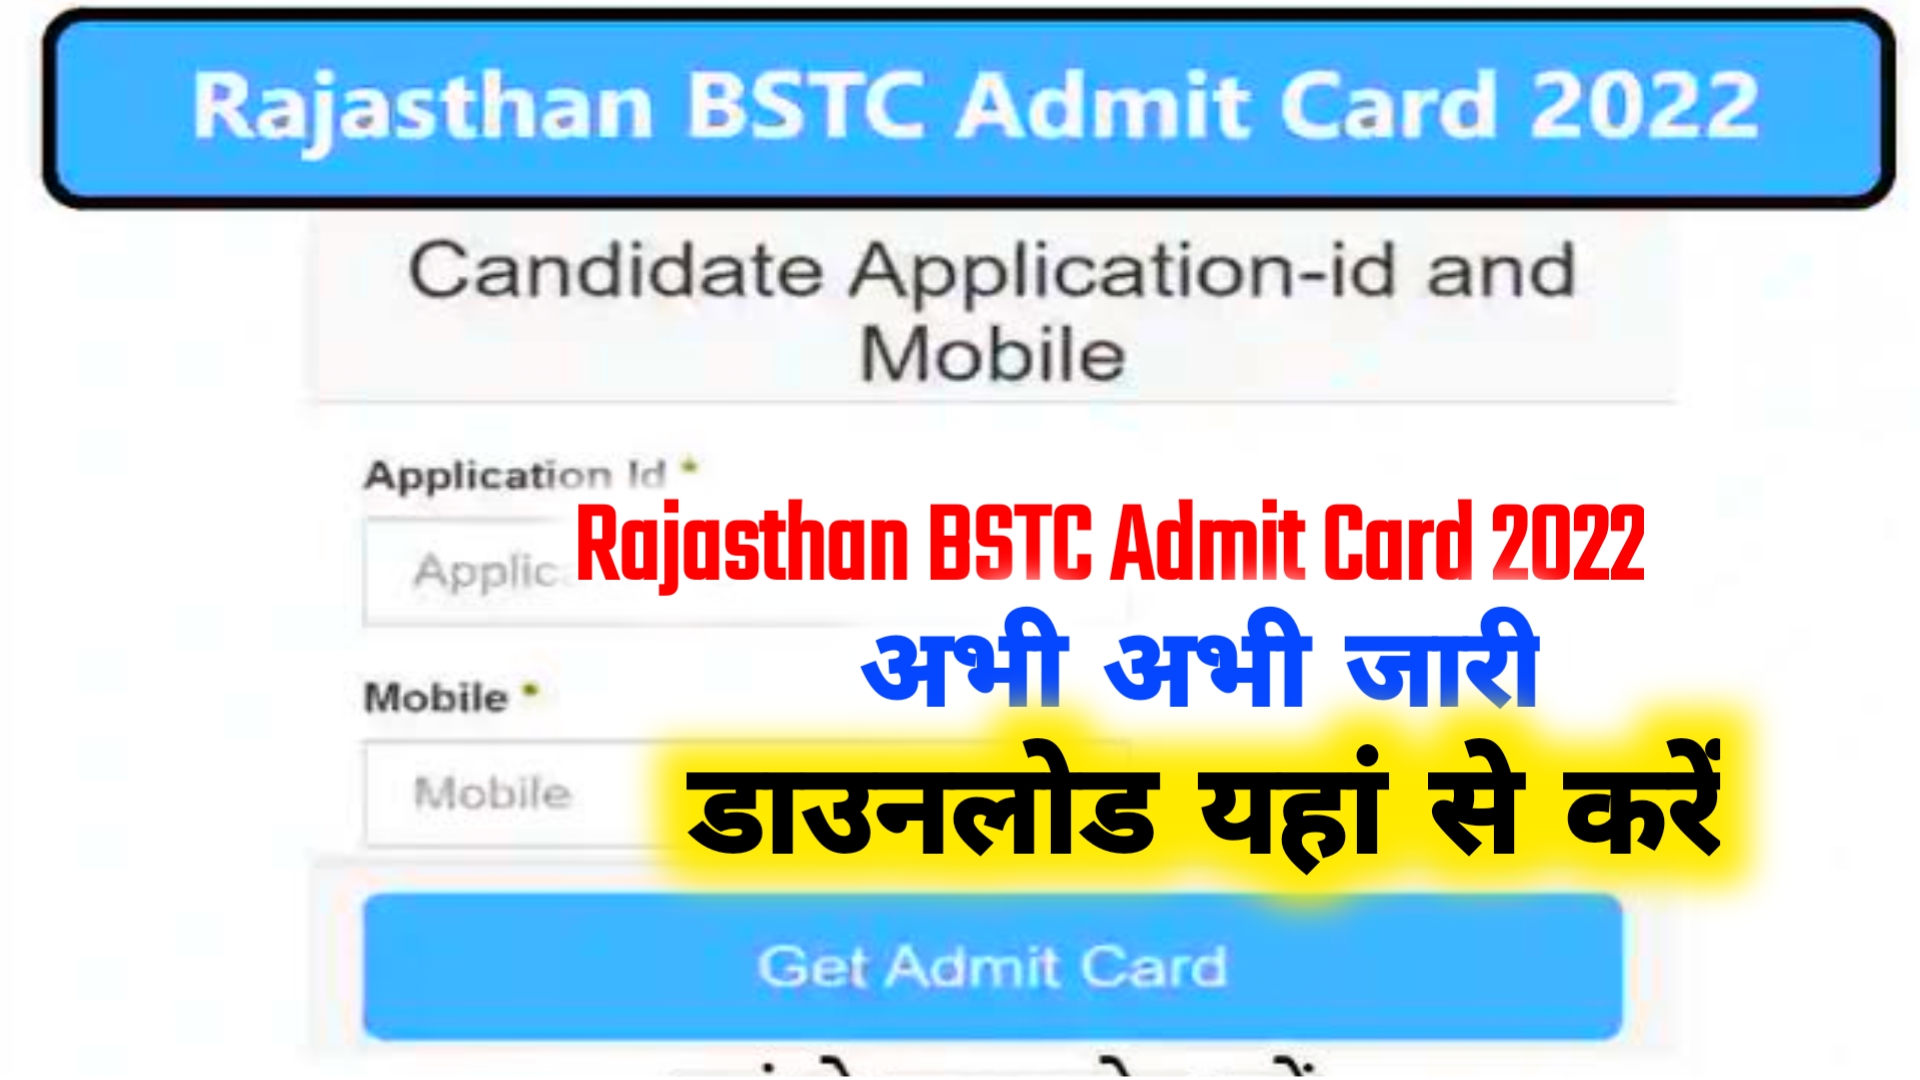 Rajasthan BSTC Admit Card 2022 Download @panjiyakpredeled.in Pre Deled